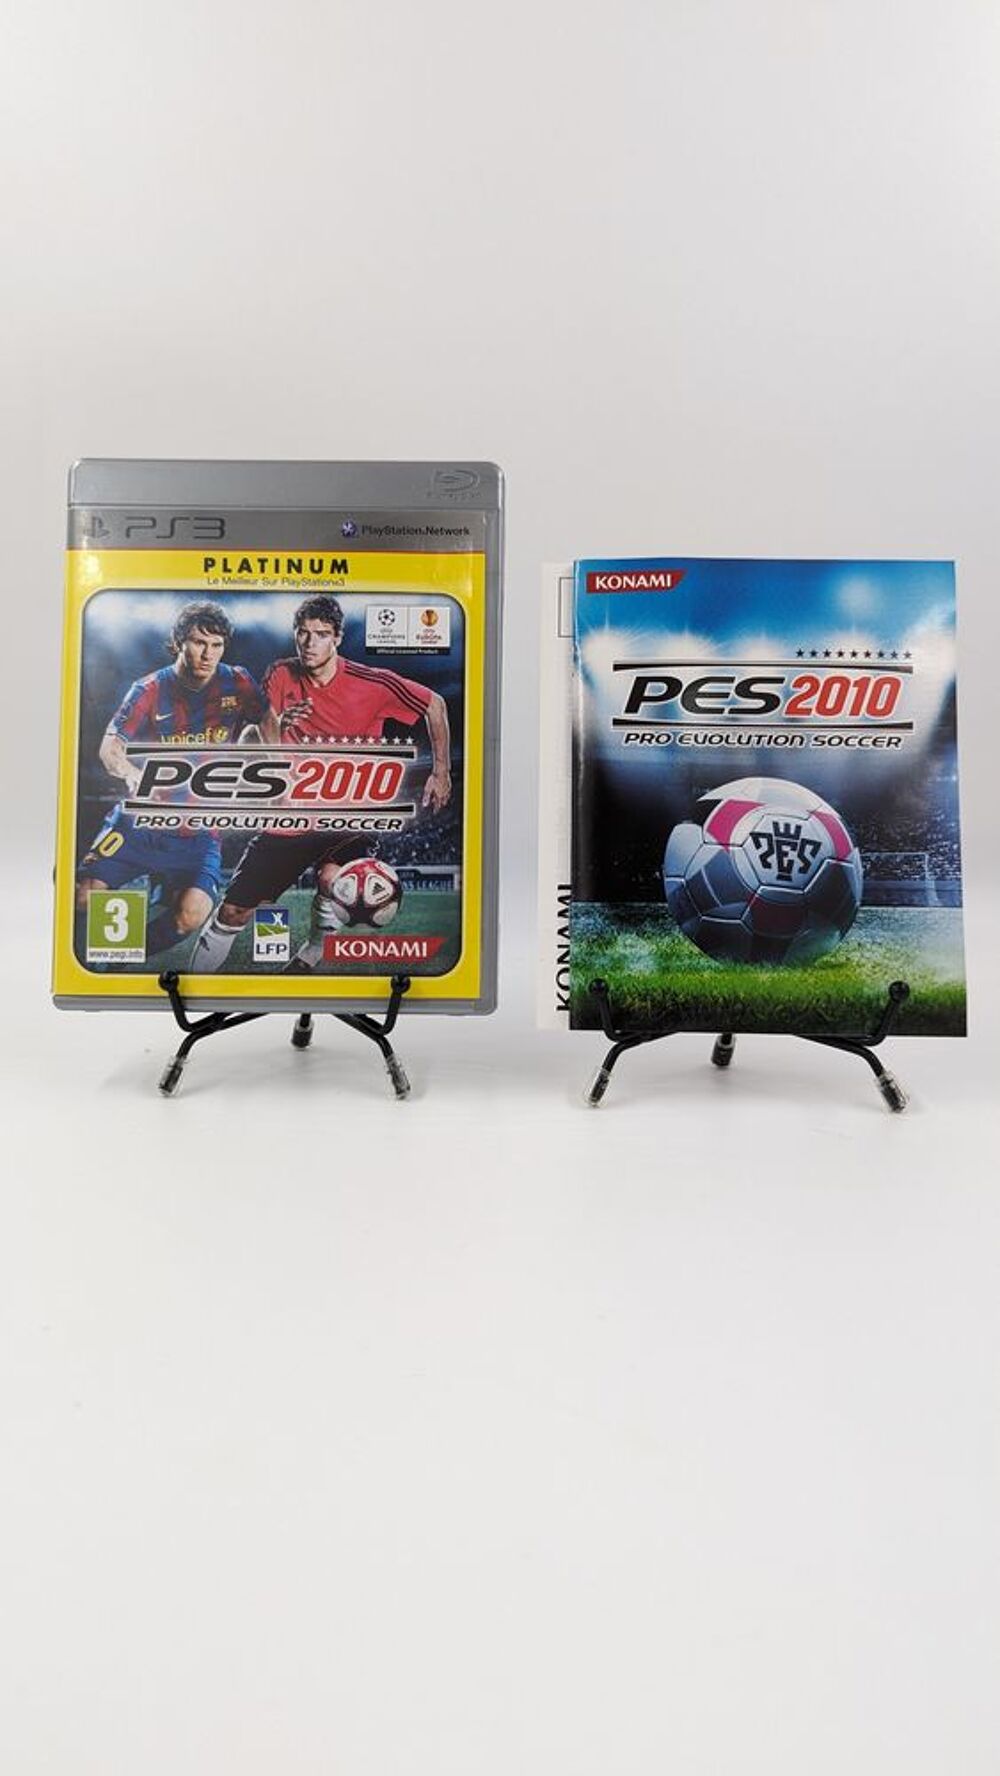 Jeu PS3 Playstation 3 Pro Evolution Soccer 2010 Platinum com Consoles et jeux vidos